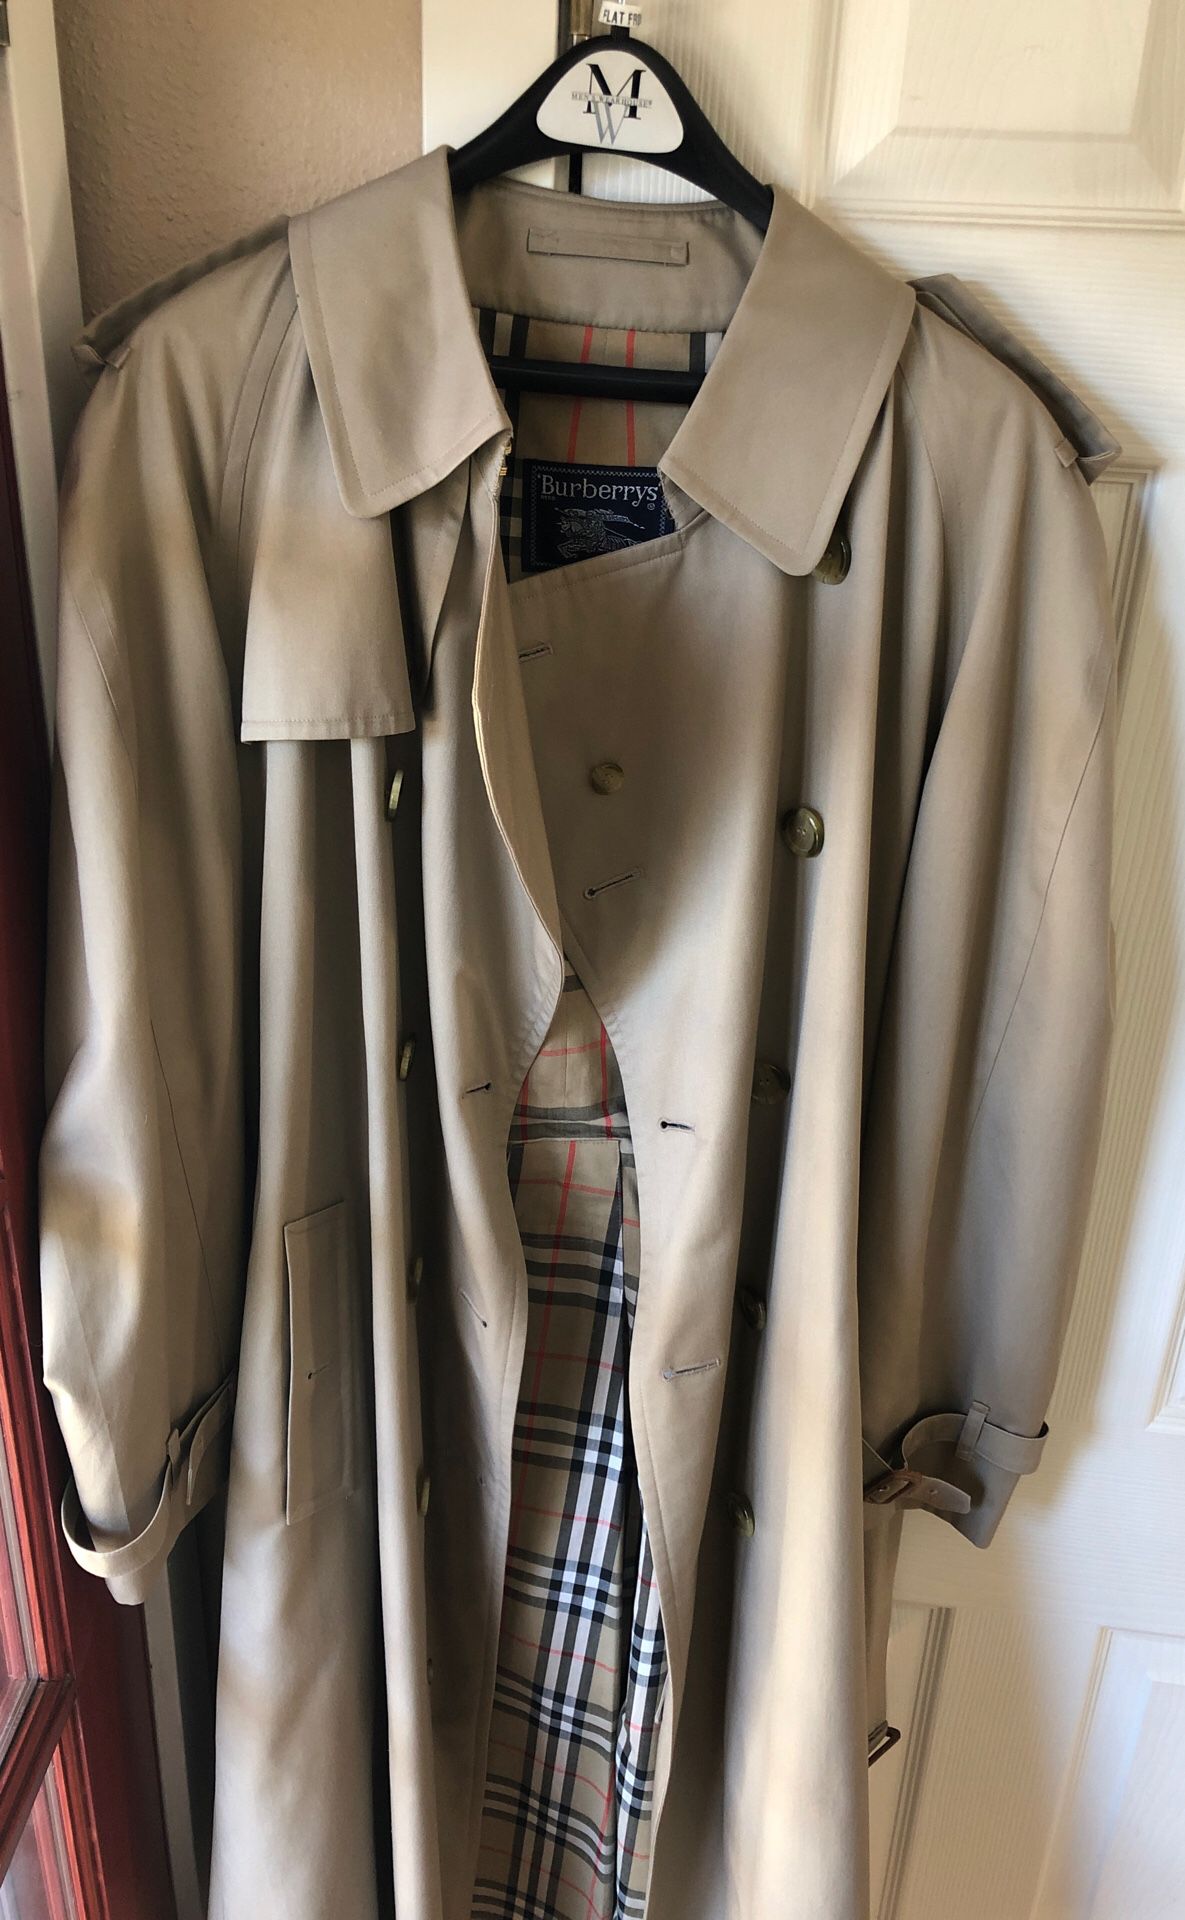 Burberrys’ Tan Trench Coat (Jacket/Overcoat)